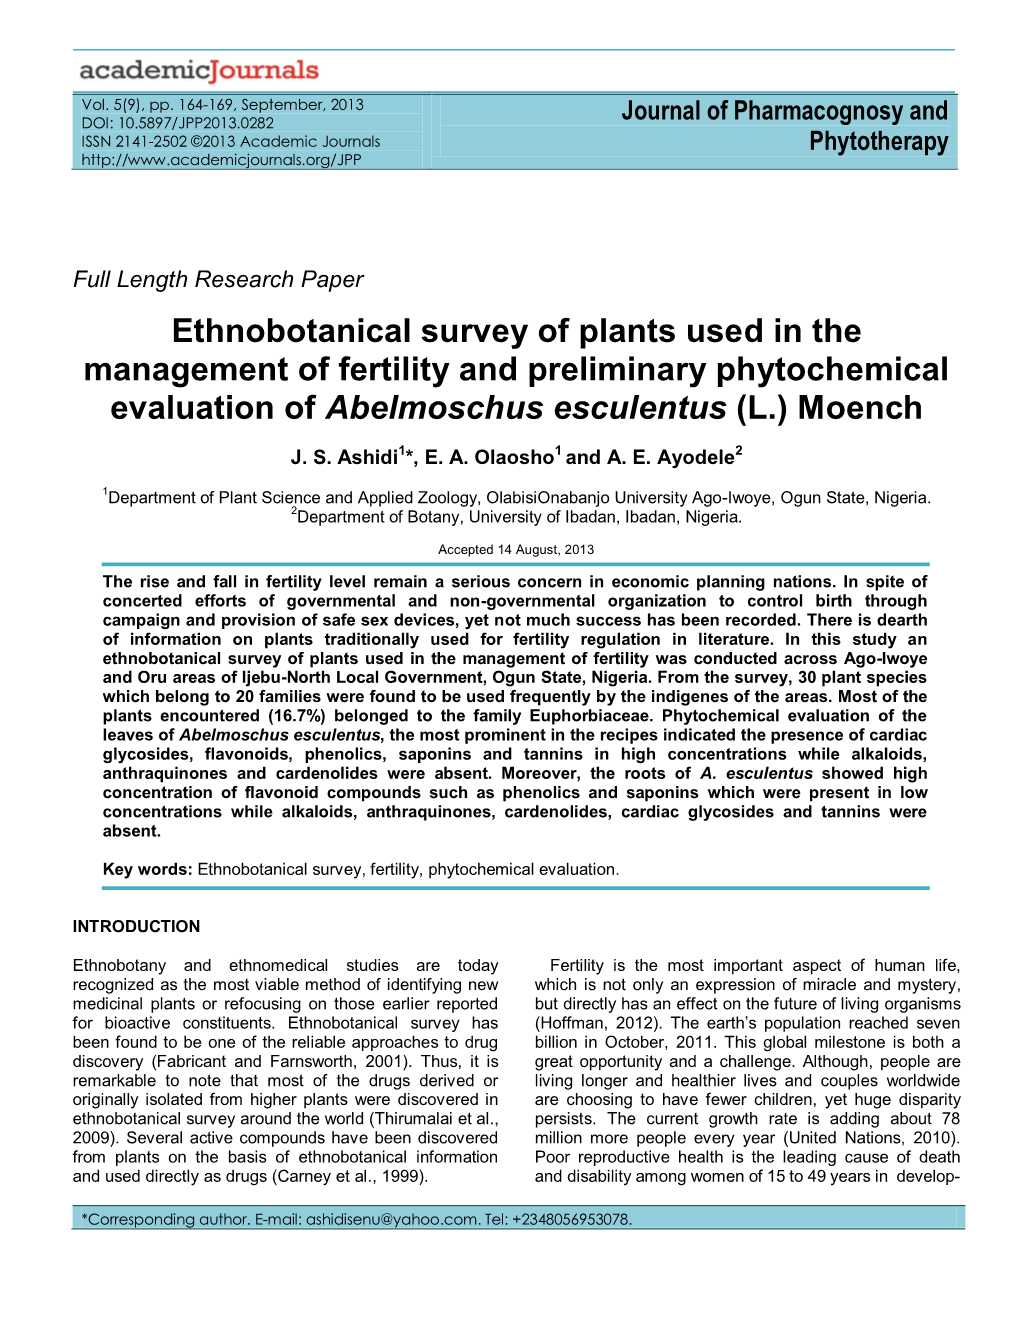 Ethnobotanicalsurvey and Preliminary Phytochemical Evaluation Of